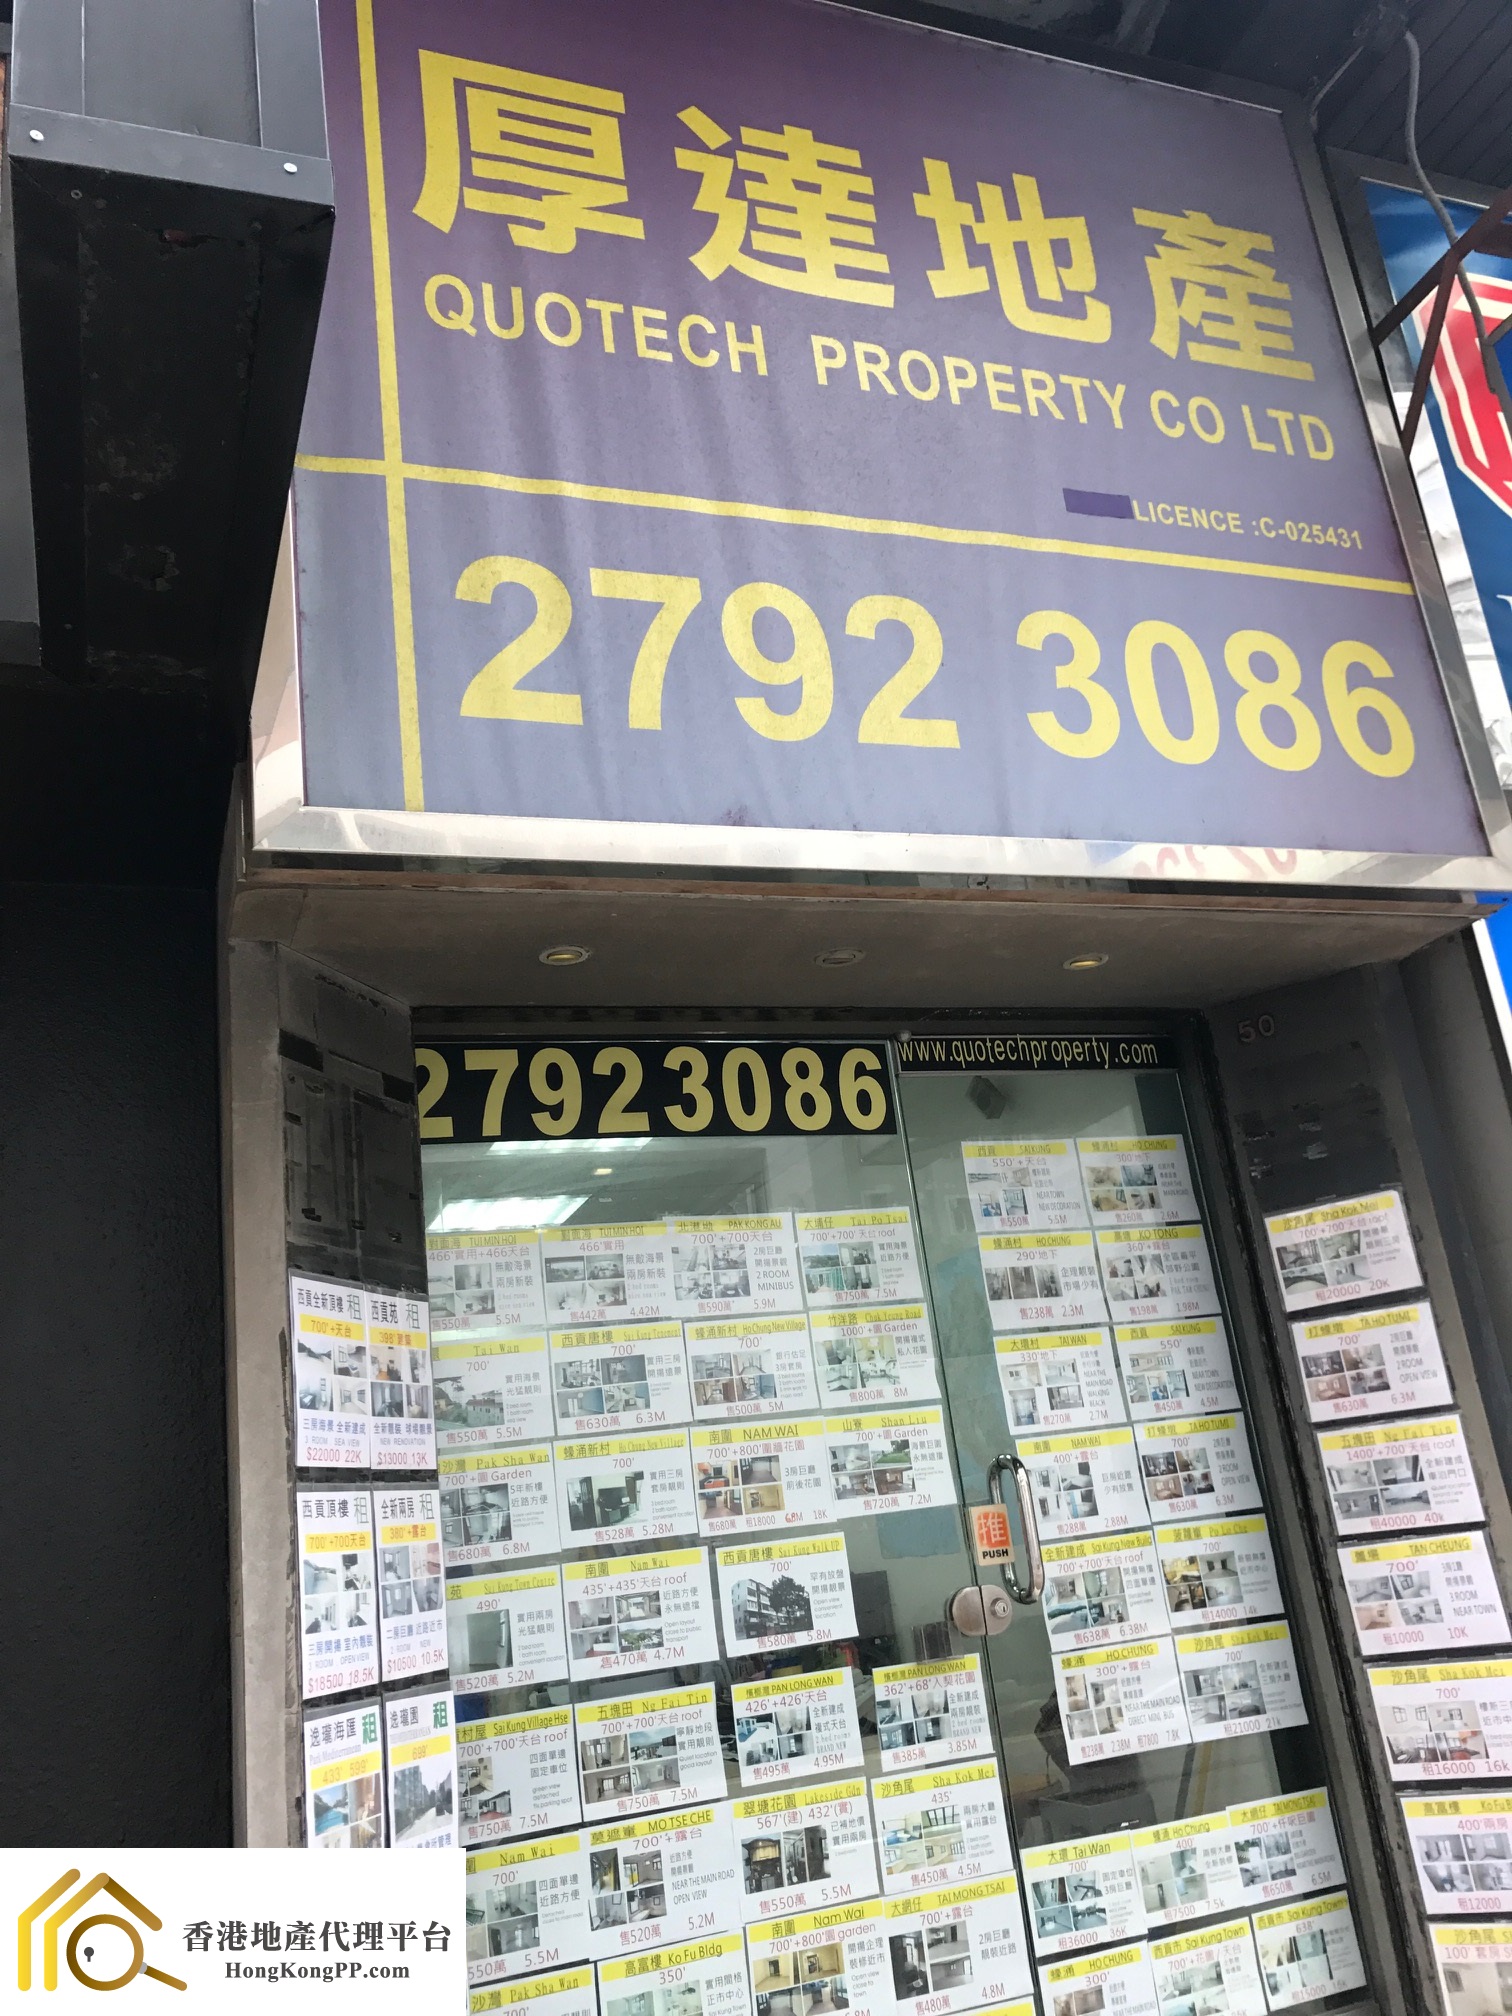 商舖地產代理: 厚達地產 Quotech Property